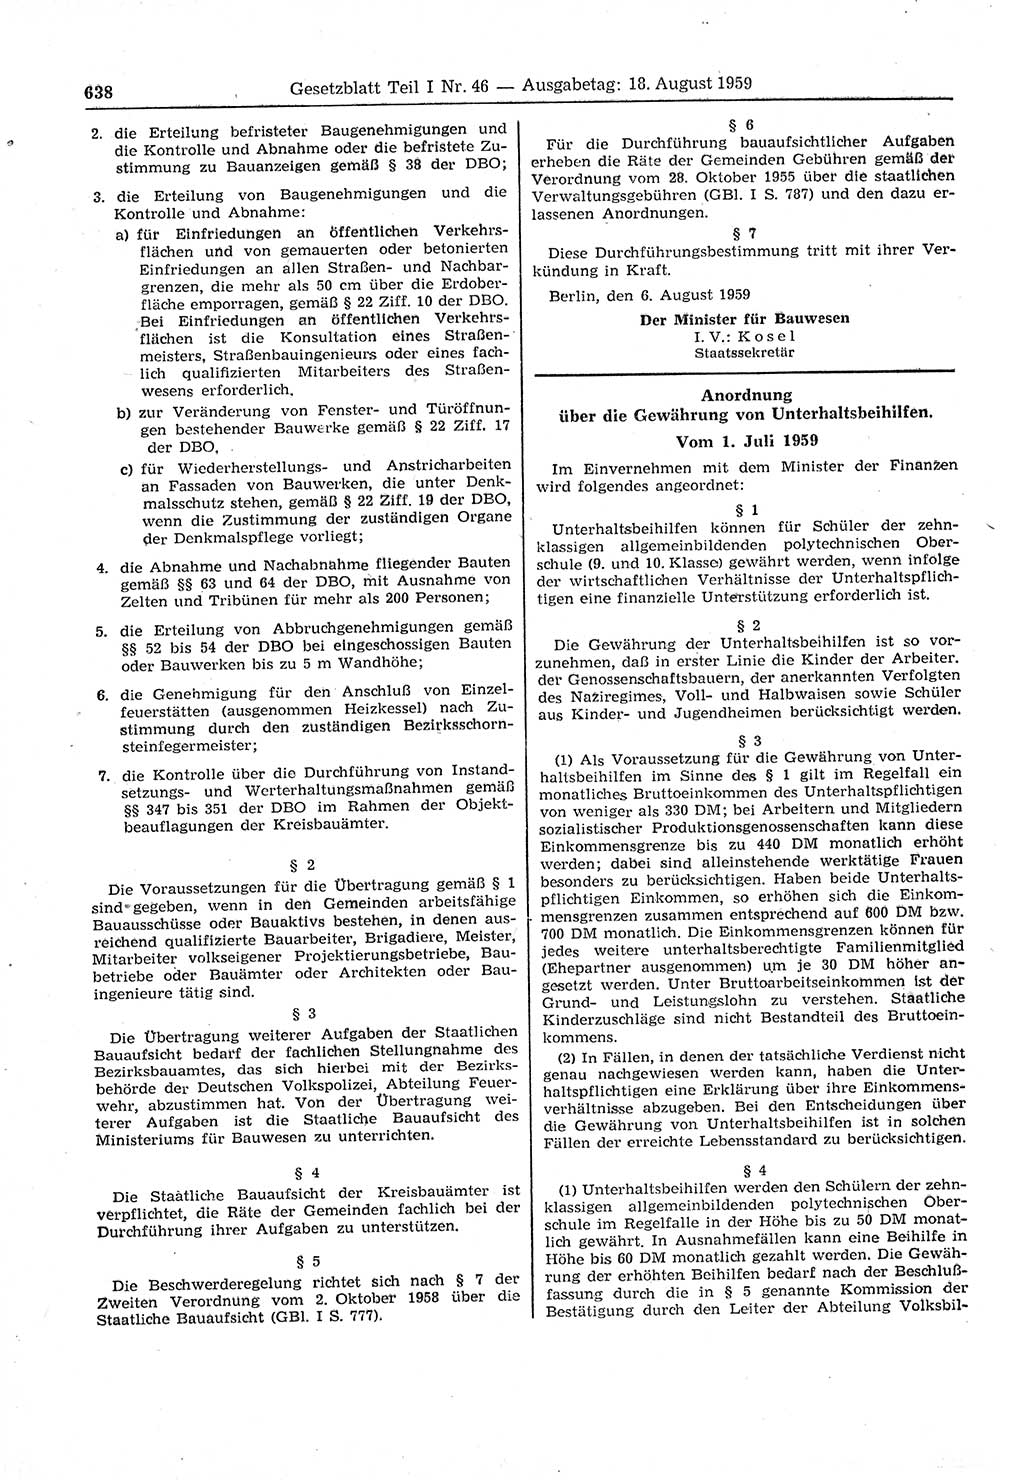 Gesetzblatt (GBl.) der Deutschen Demokratischen Republik (DDR) Teil Ⅰ 1959, Seite 638 (GBl. DDR Ⅰ 1959, S. 638)